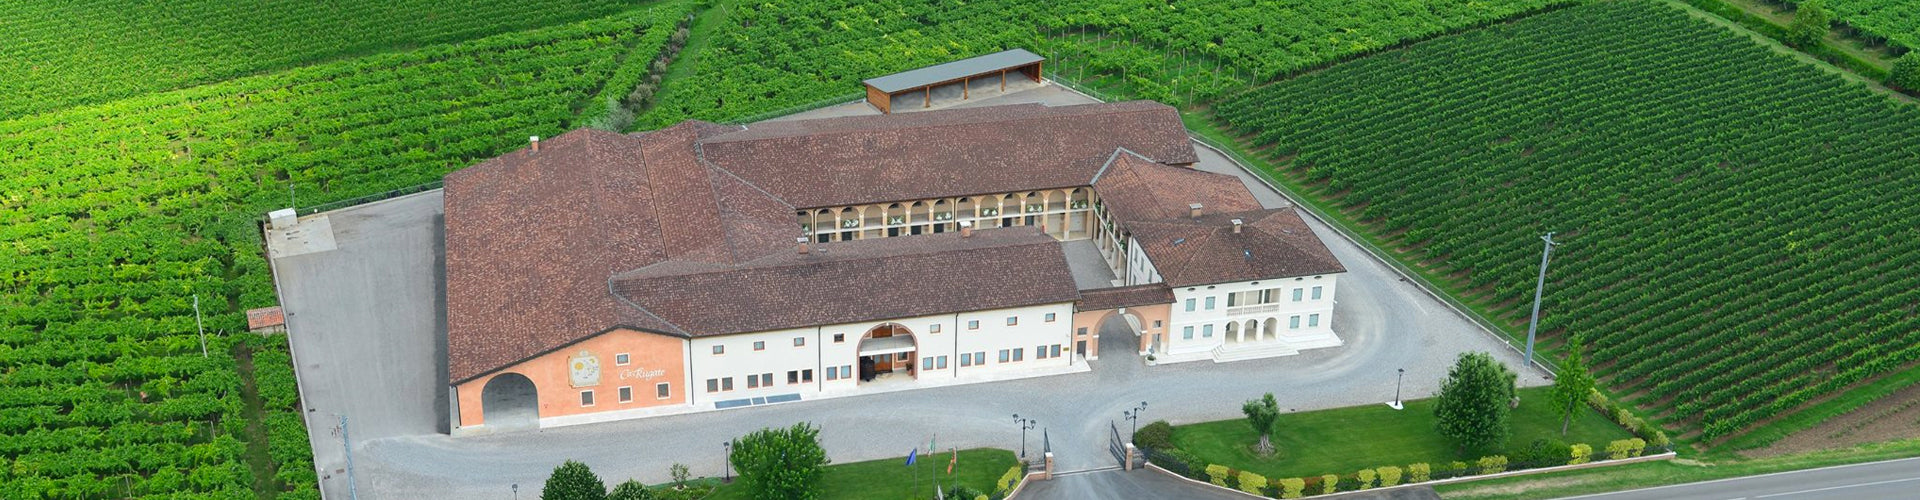 Ca'Rugate Winery in Italy's Veneto